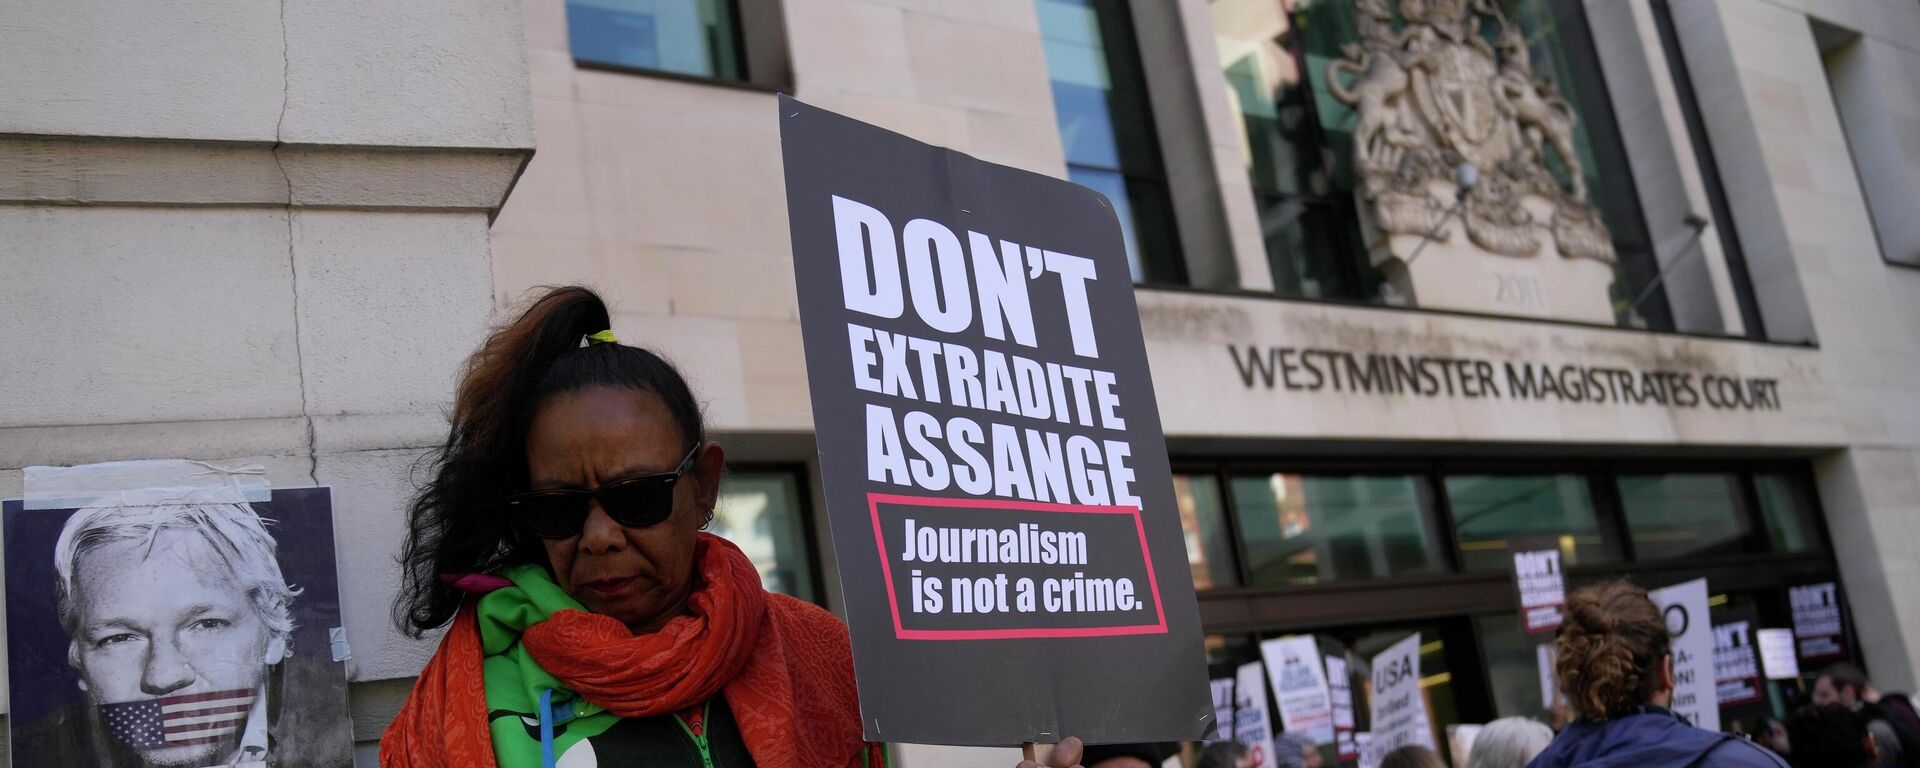 İnsan hakları ve basın özgürlüğü savunucuları, İngiltere İçişleri Bakanı Priti Patel'den WikiLeaks'in kurucusu Julian Assange'ın ABD'ye iadesini durdurmasını istedi. - Sputnik Türkiye, 1920, 17.06.2022